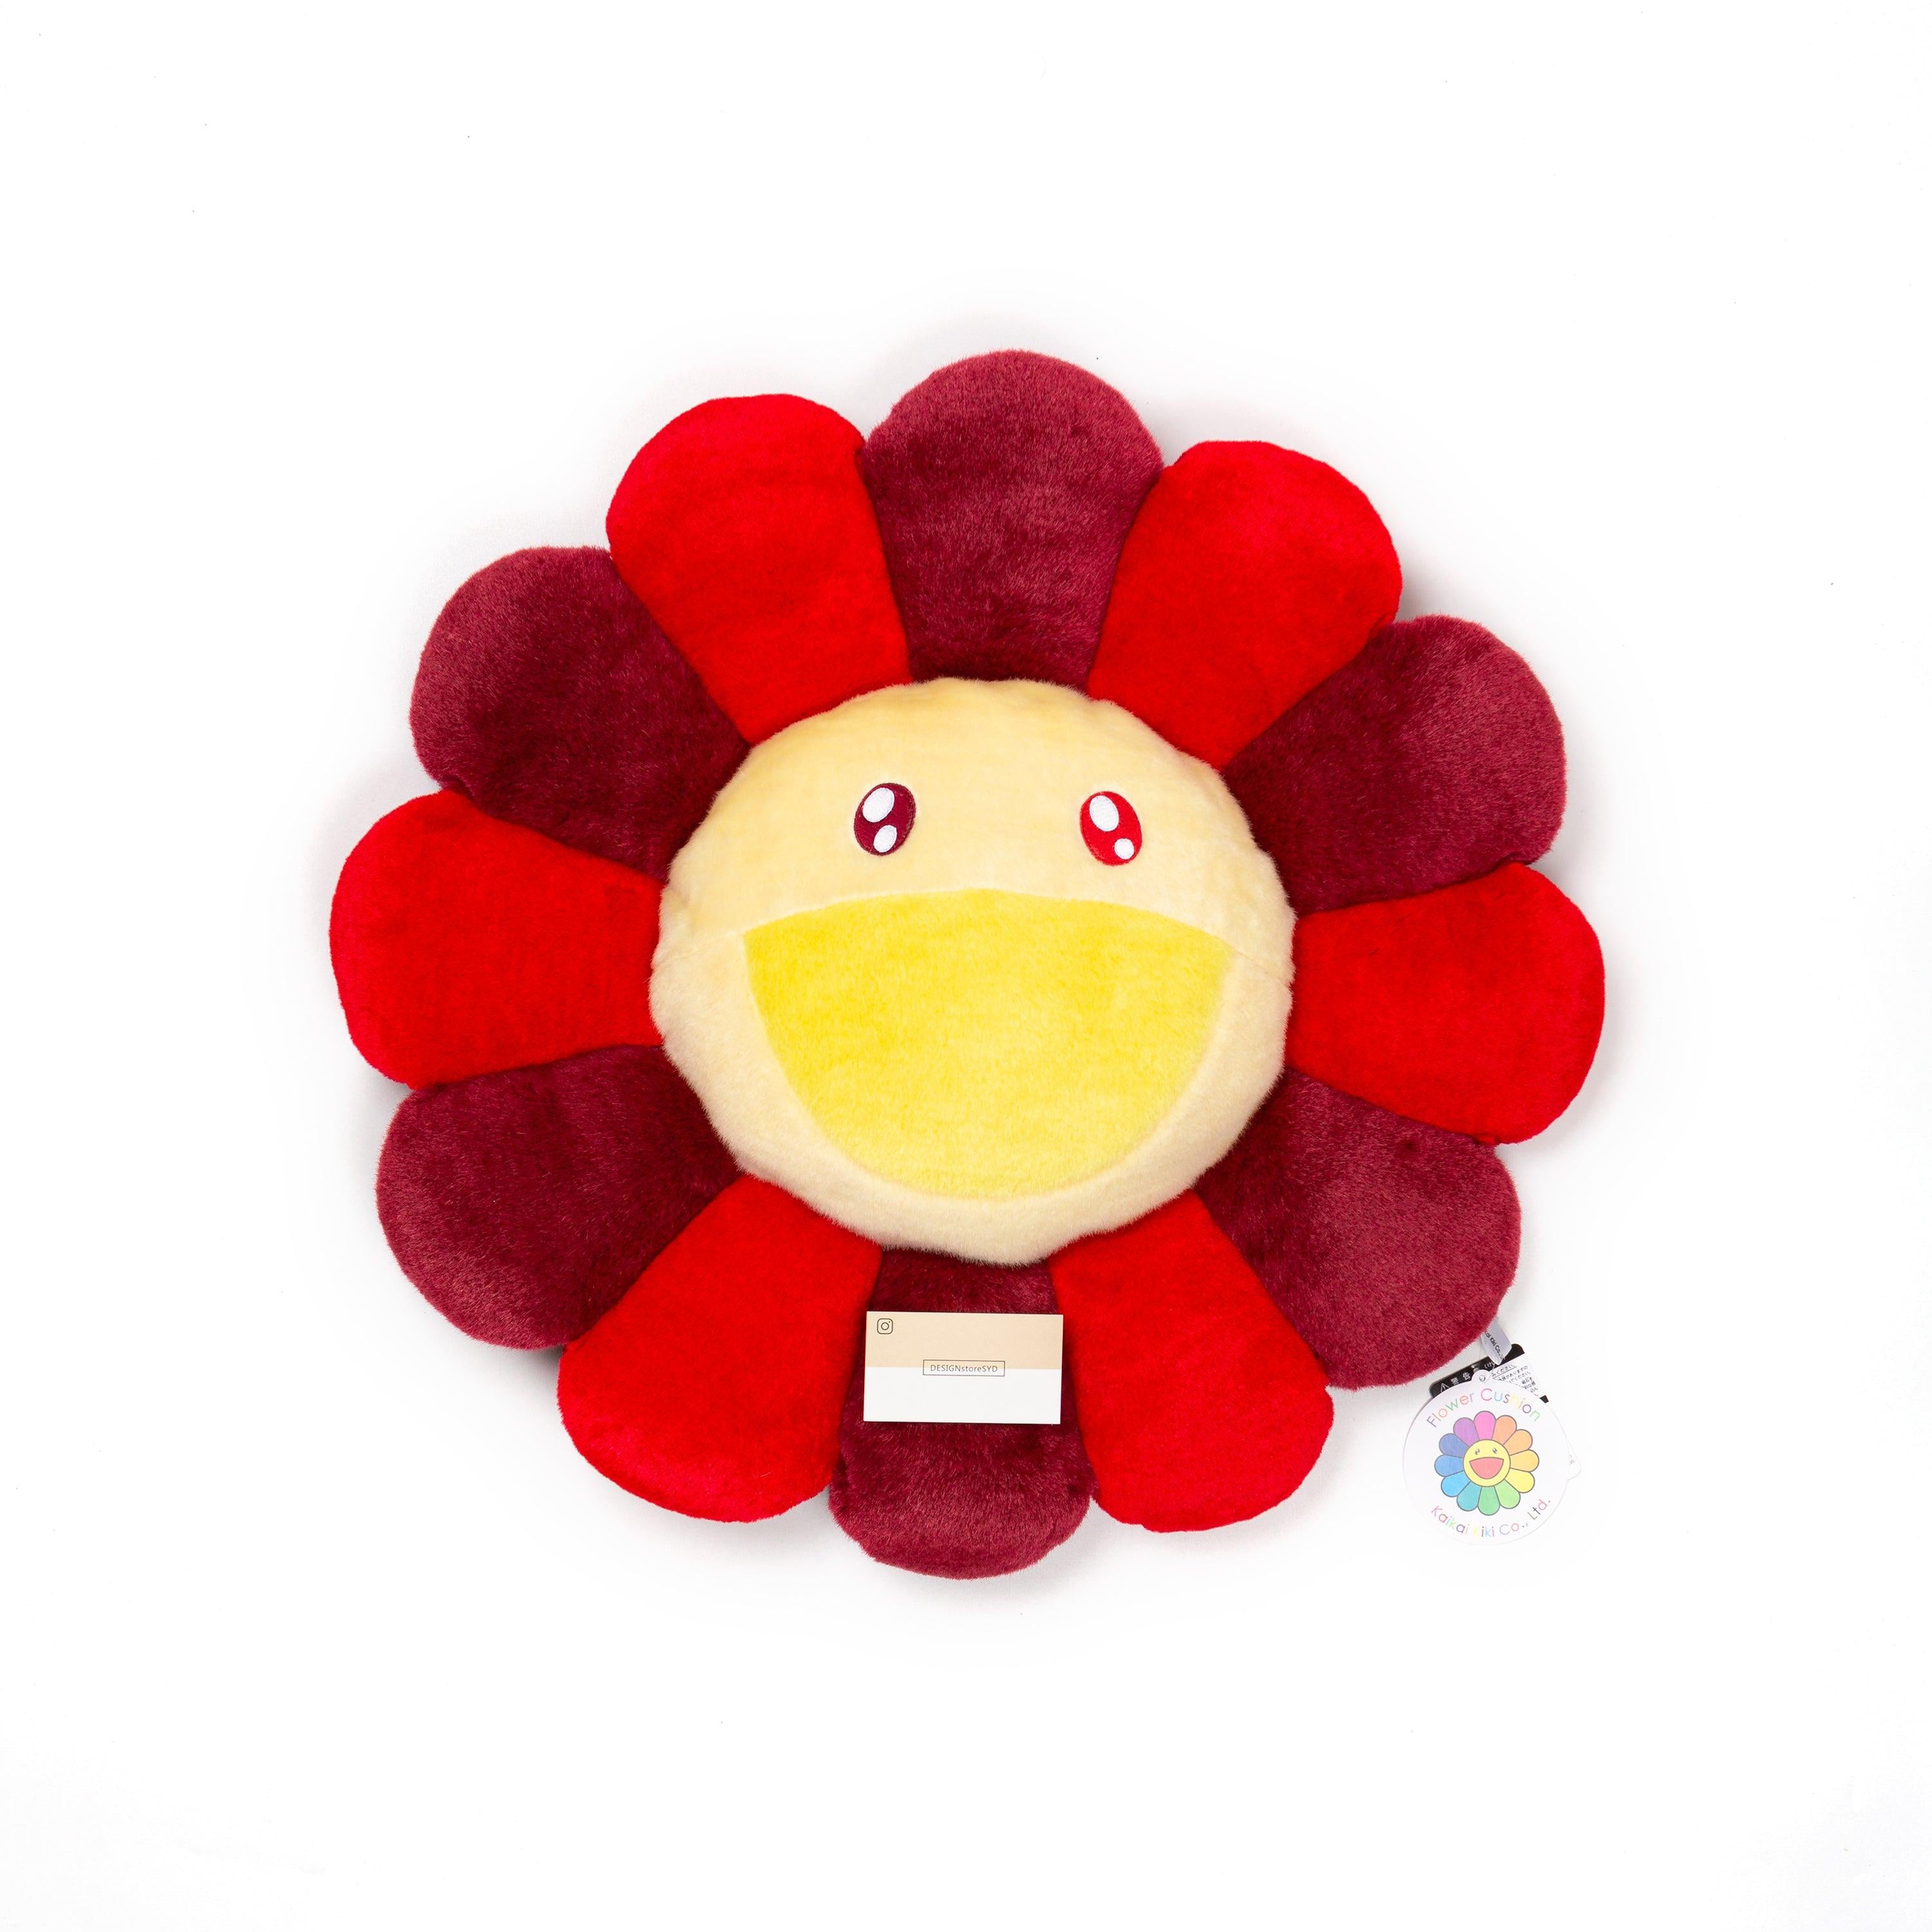 Takashi Murakami - Flower Pillow - Rainbow (30cm)